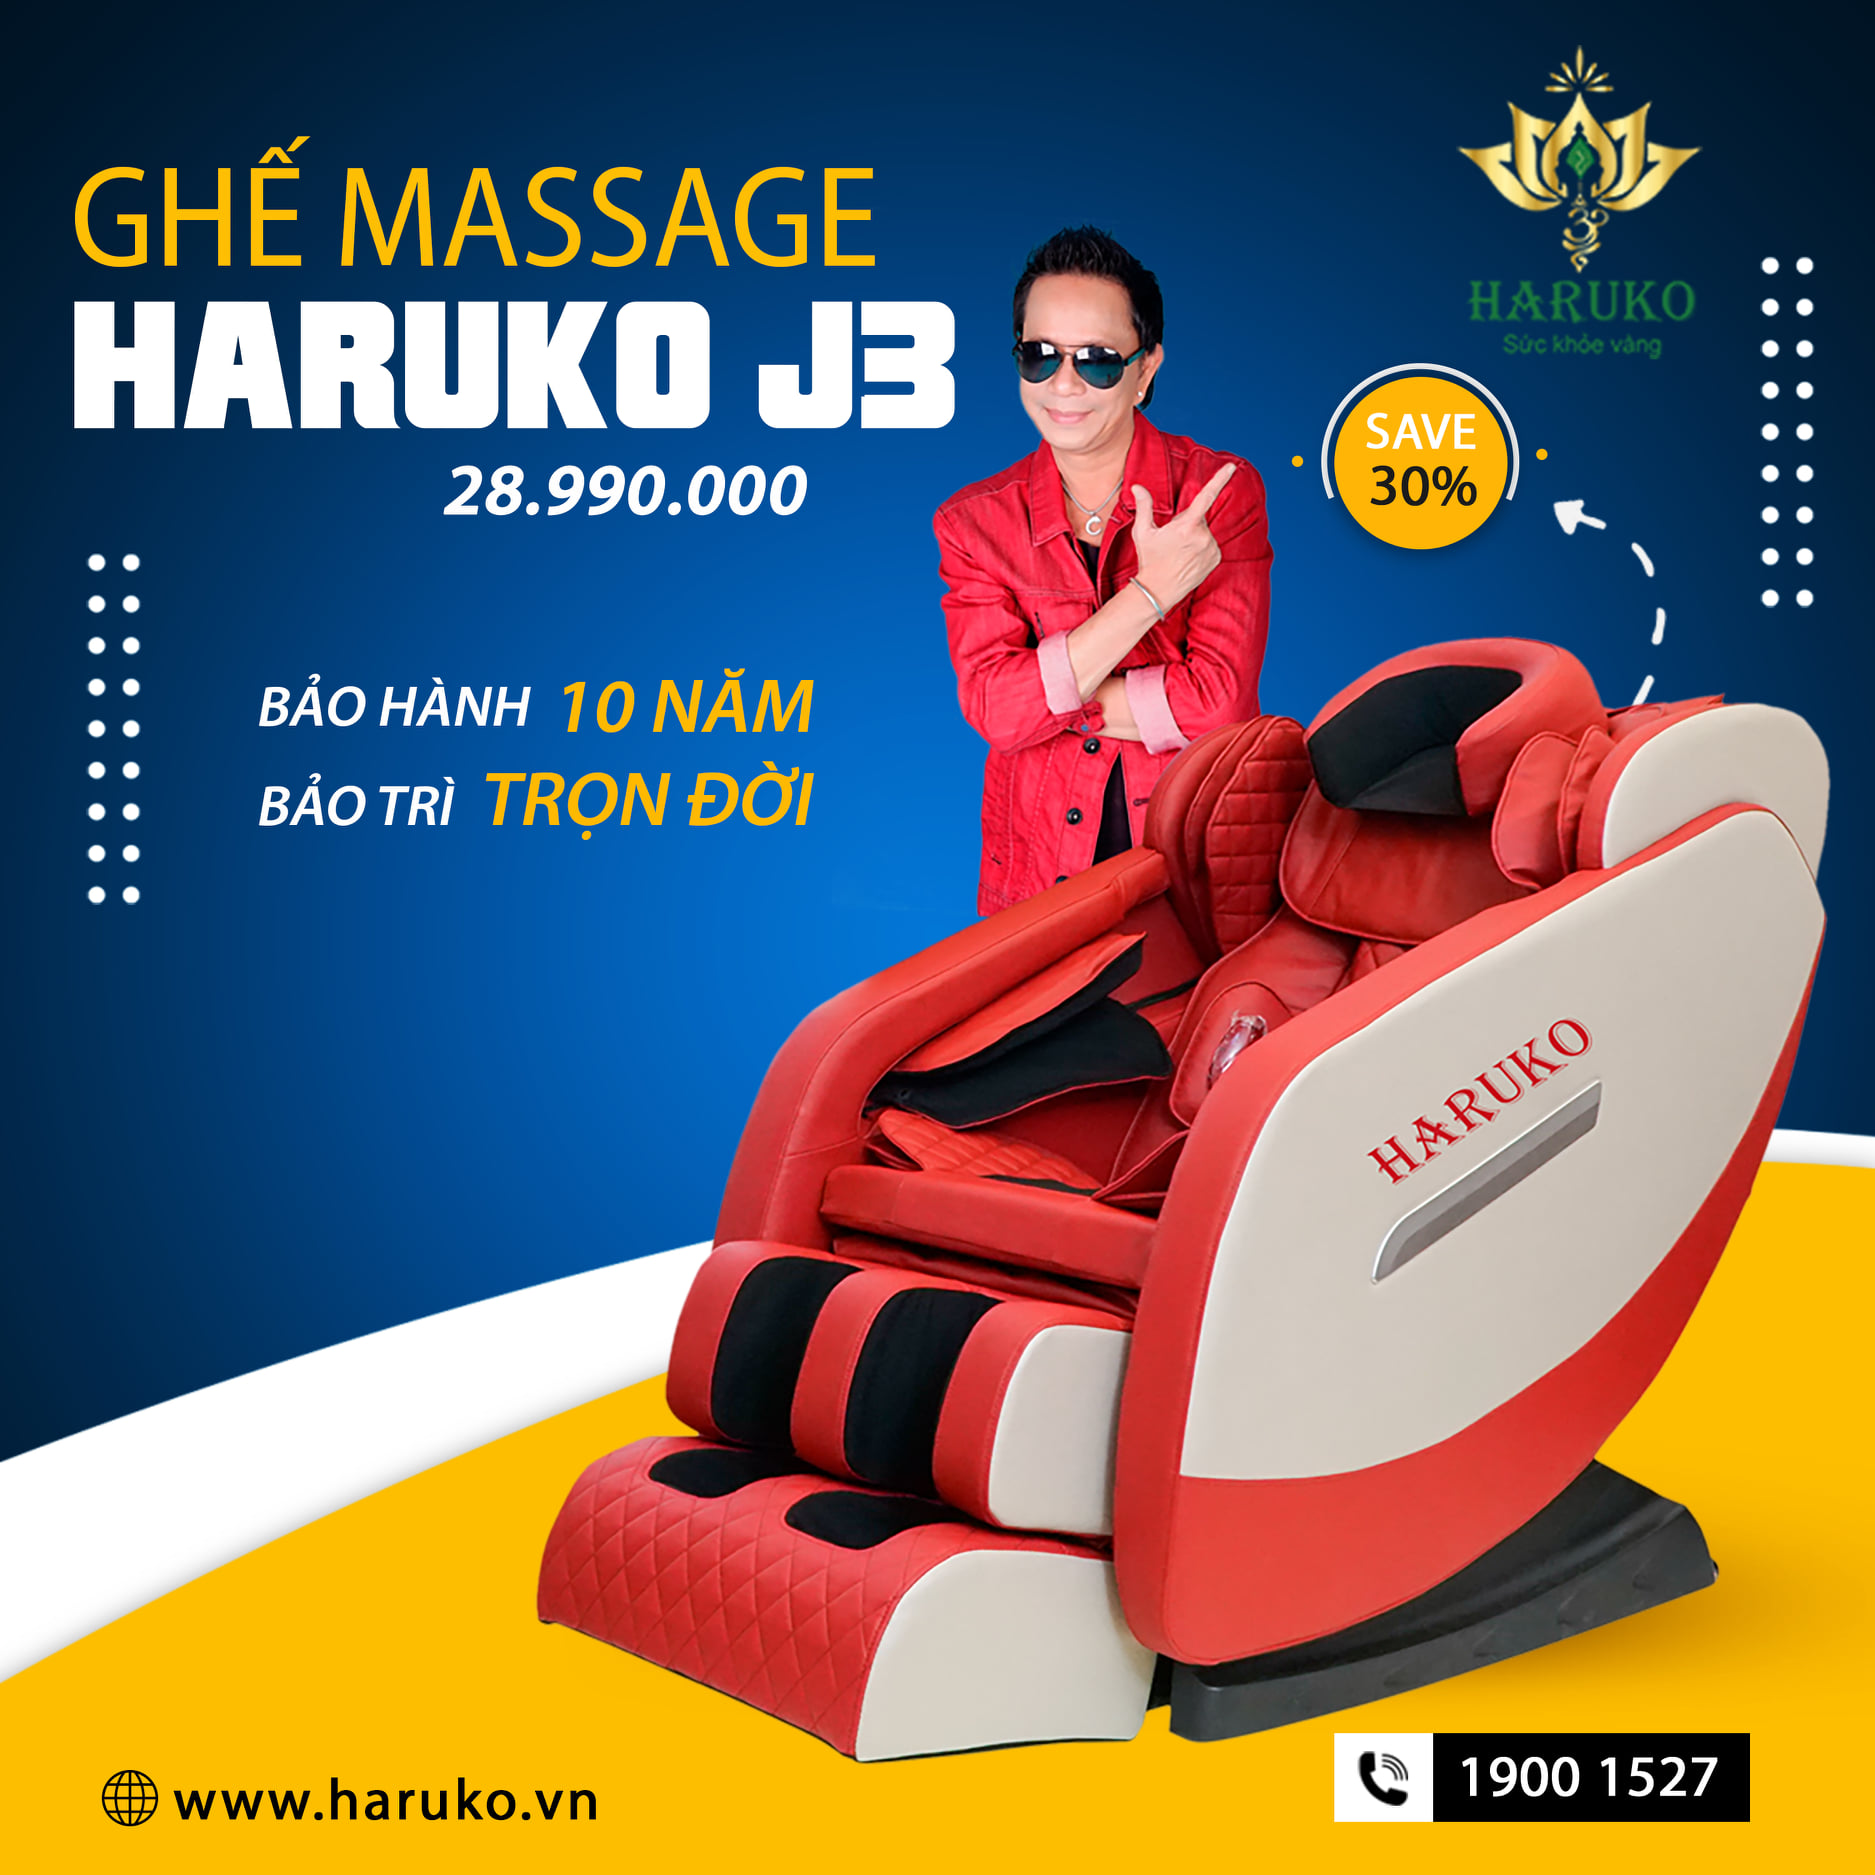 Ghế massage thuộc phân khúc này được nhiều khách hàng tin dùng do đáp ứng được nhu cầu đầy đủ về chức năng